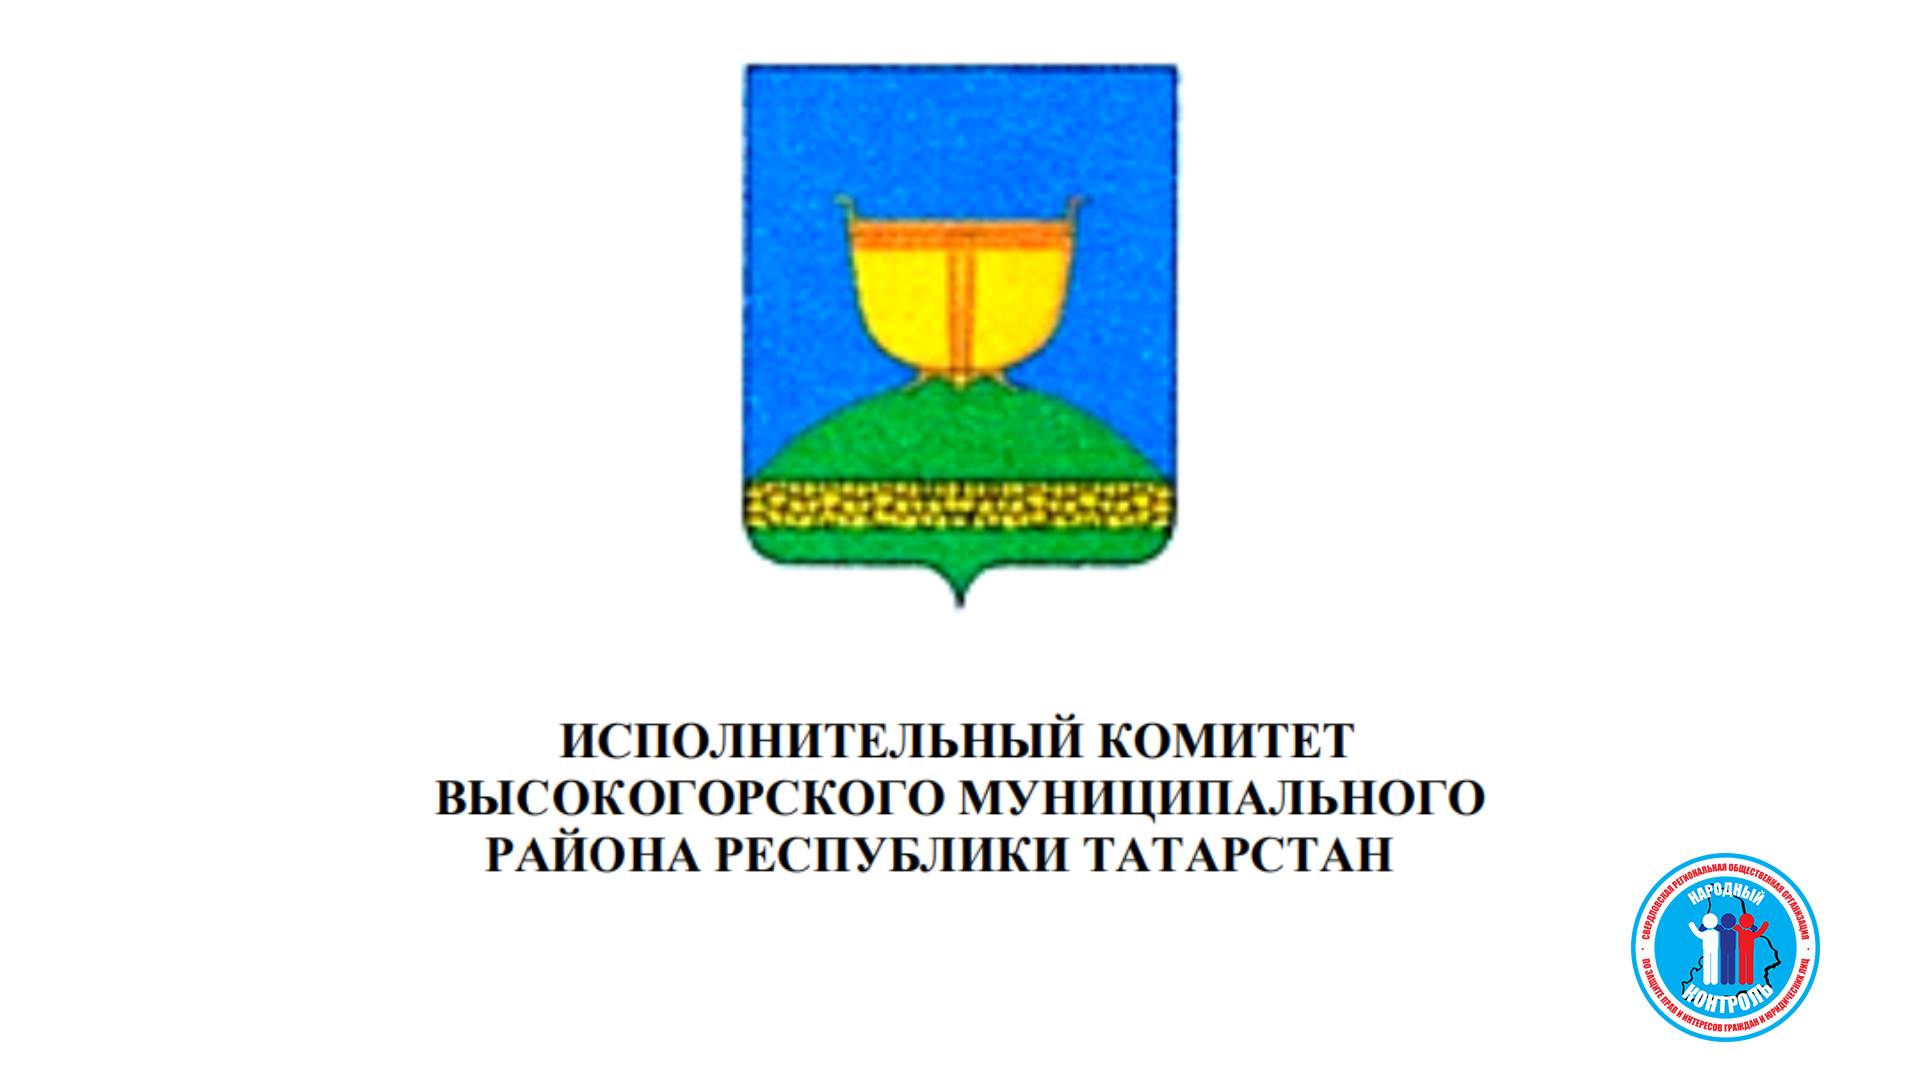 ИК Высокогорского муниципального р-на Татарстан